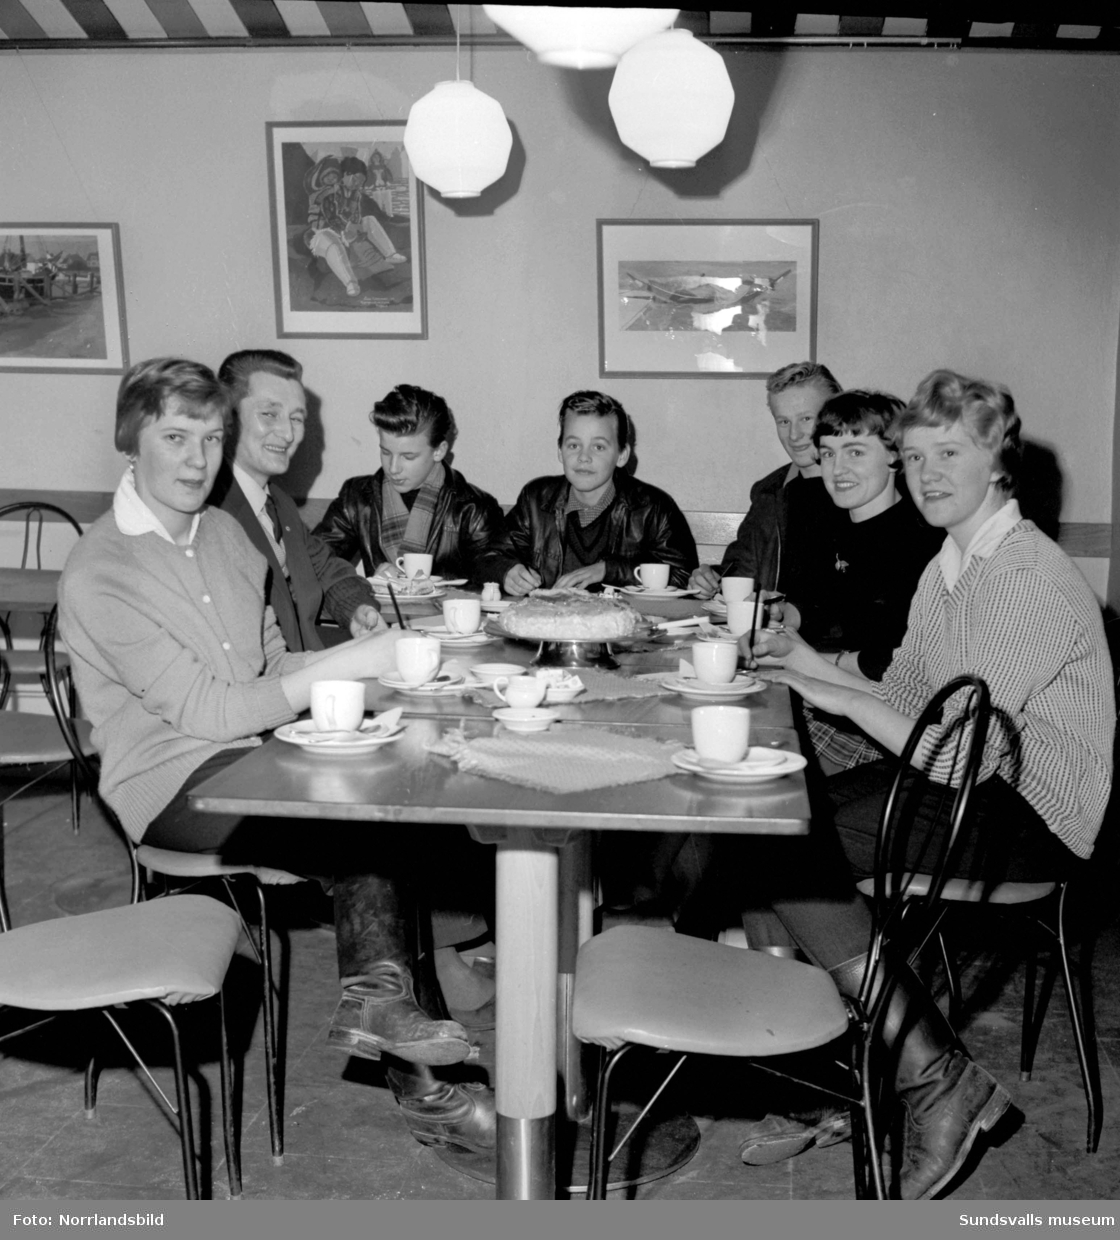 Fikaträffar för ungdomar i en lokal i Sundsvall. Bild två: Fem killar står för underhållningen på gitarr, trummor och tvättbräda.